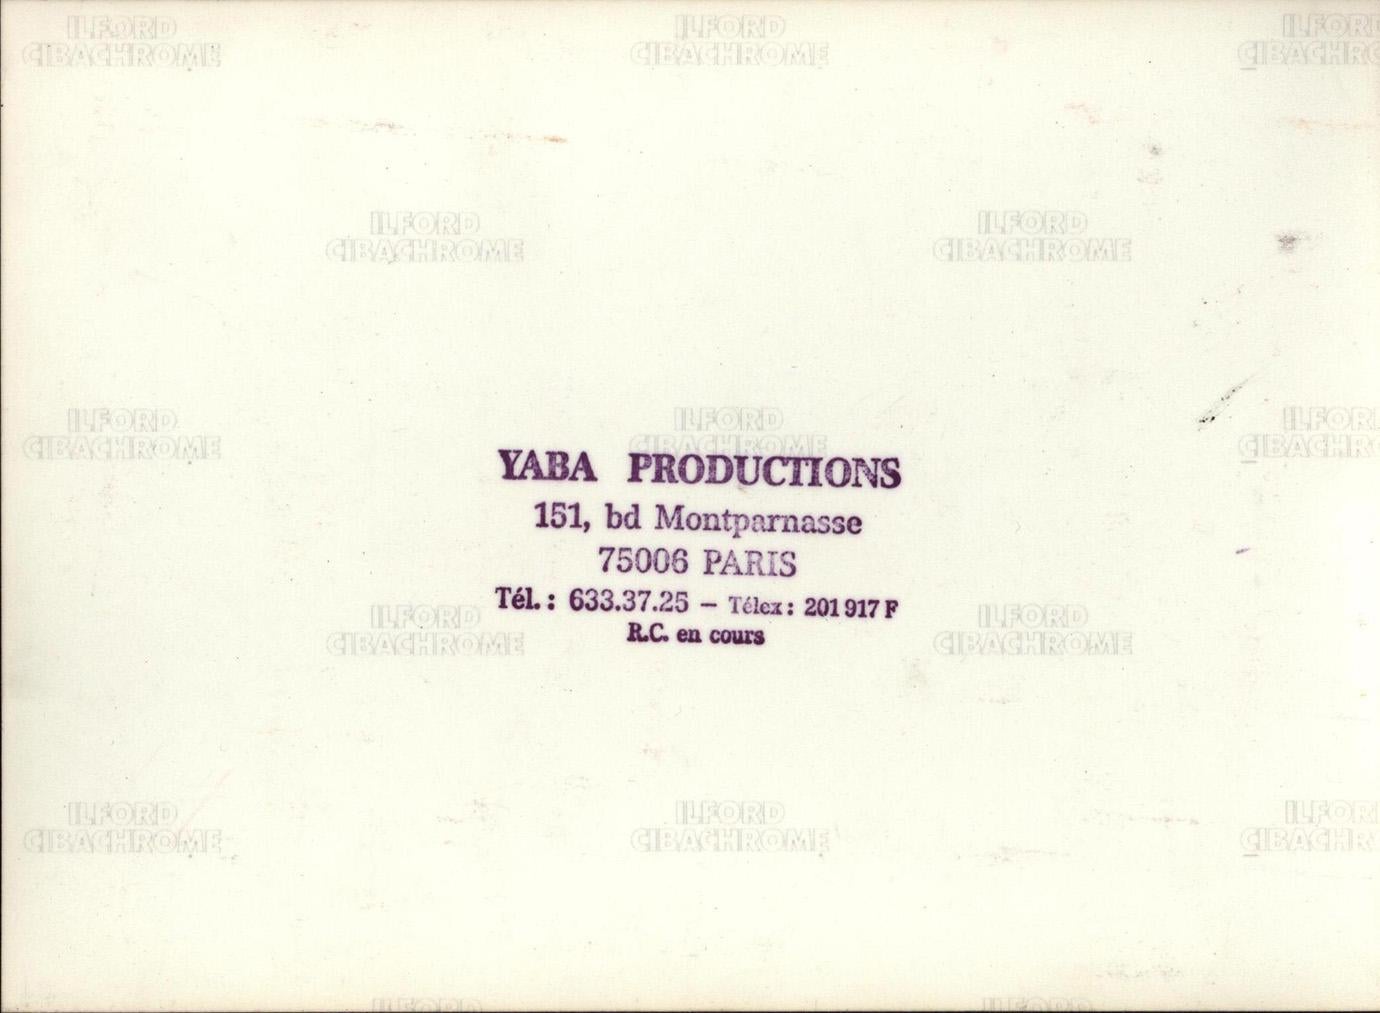 Fela Kuti: Eine seltene Vintage-Sammlung von: 

2 Werbefotos aus der Dunkelkammer, ca. Anfang/Mitte der 1980er Jahre. Jedes ist 5x7 Zoll groß.

15+ 35mm-Dias von Fela bei Live-Auftritten Anfang/Mitte der 1980er Jahre.

Sechs 2,25-Folien von Felas